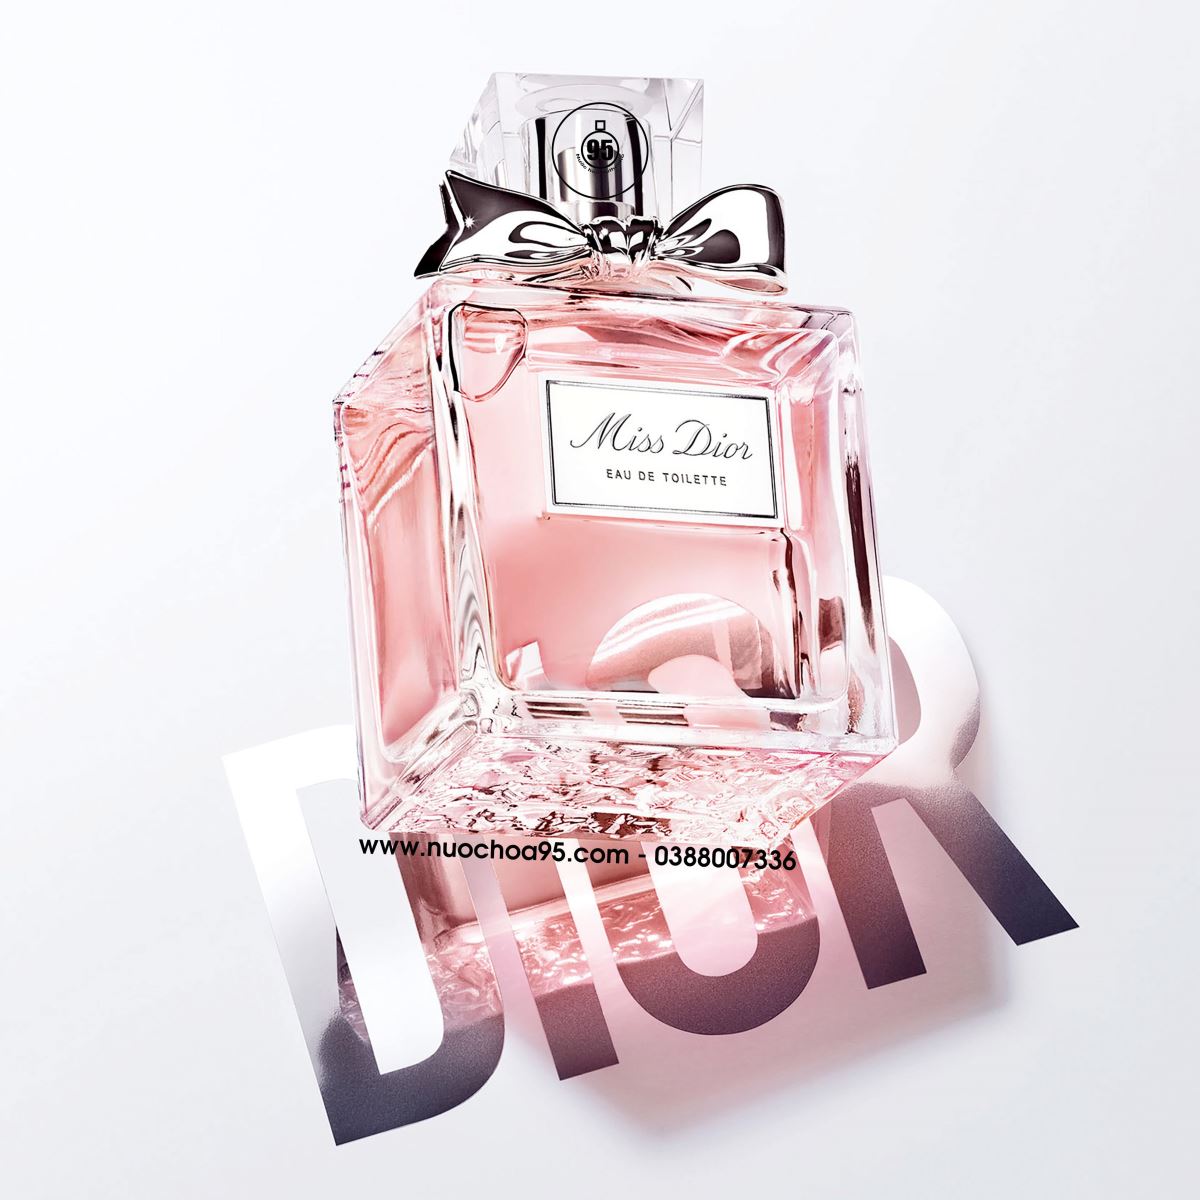 Nước Hoa Dior Miss Dior Le Parfum 40ml Chính Hãng Cho Nữ